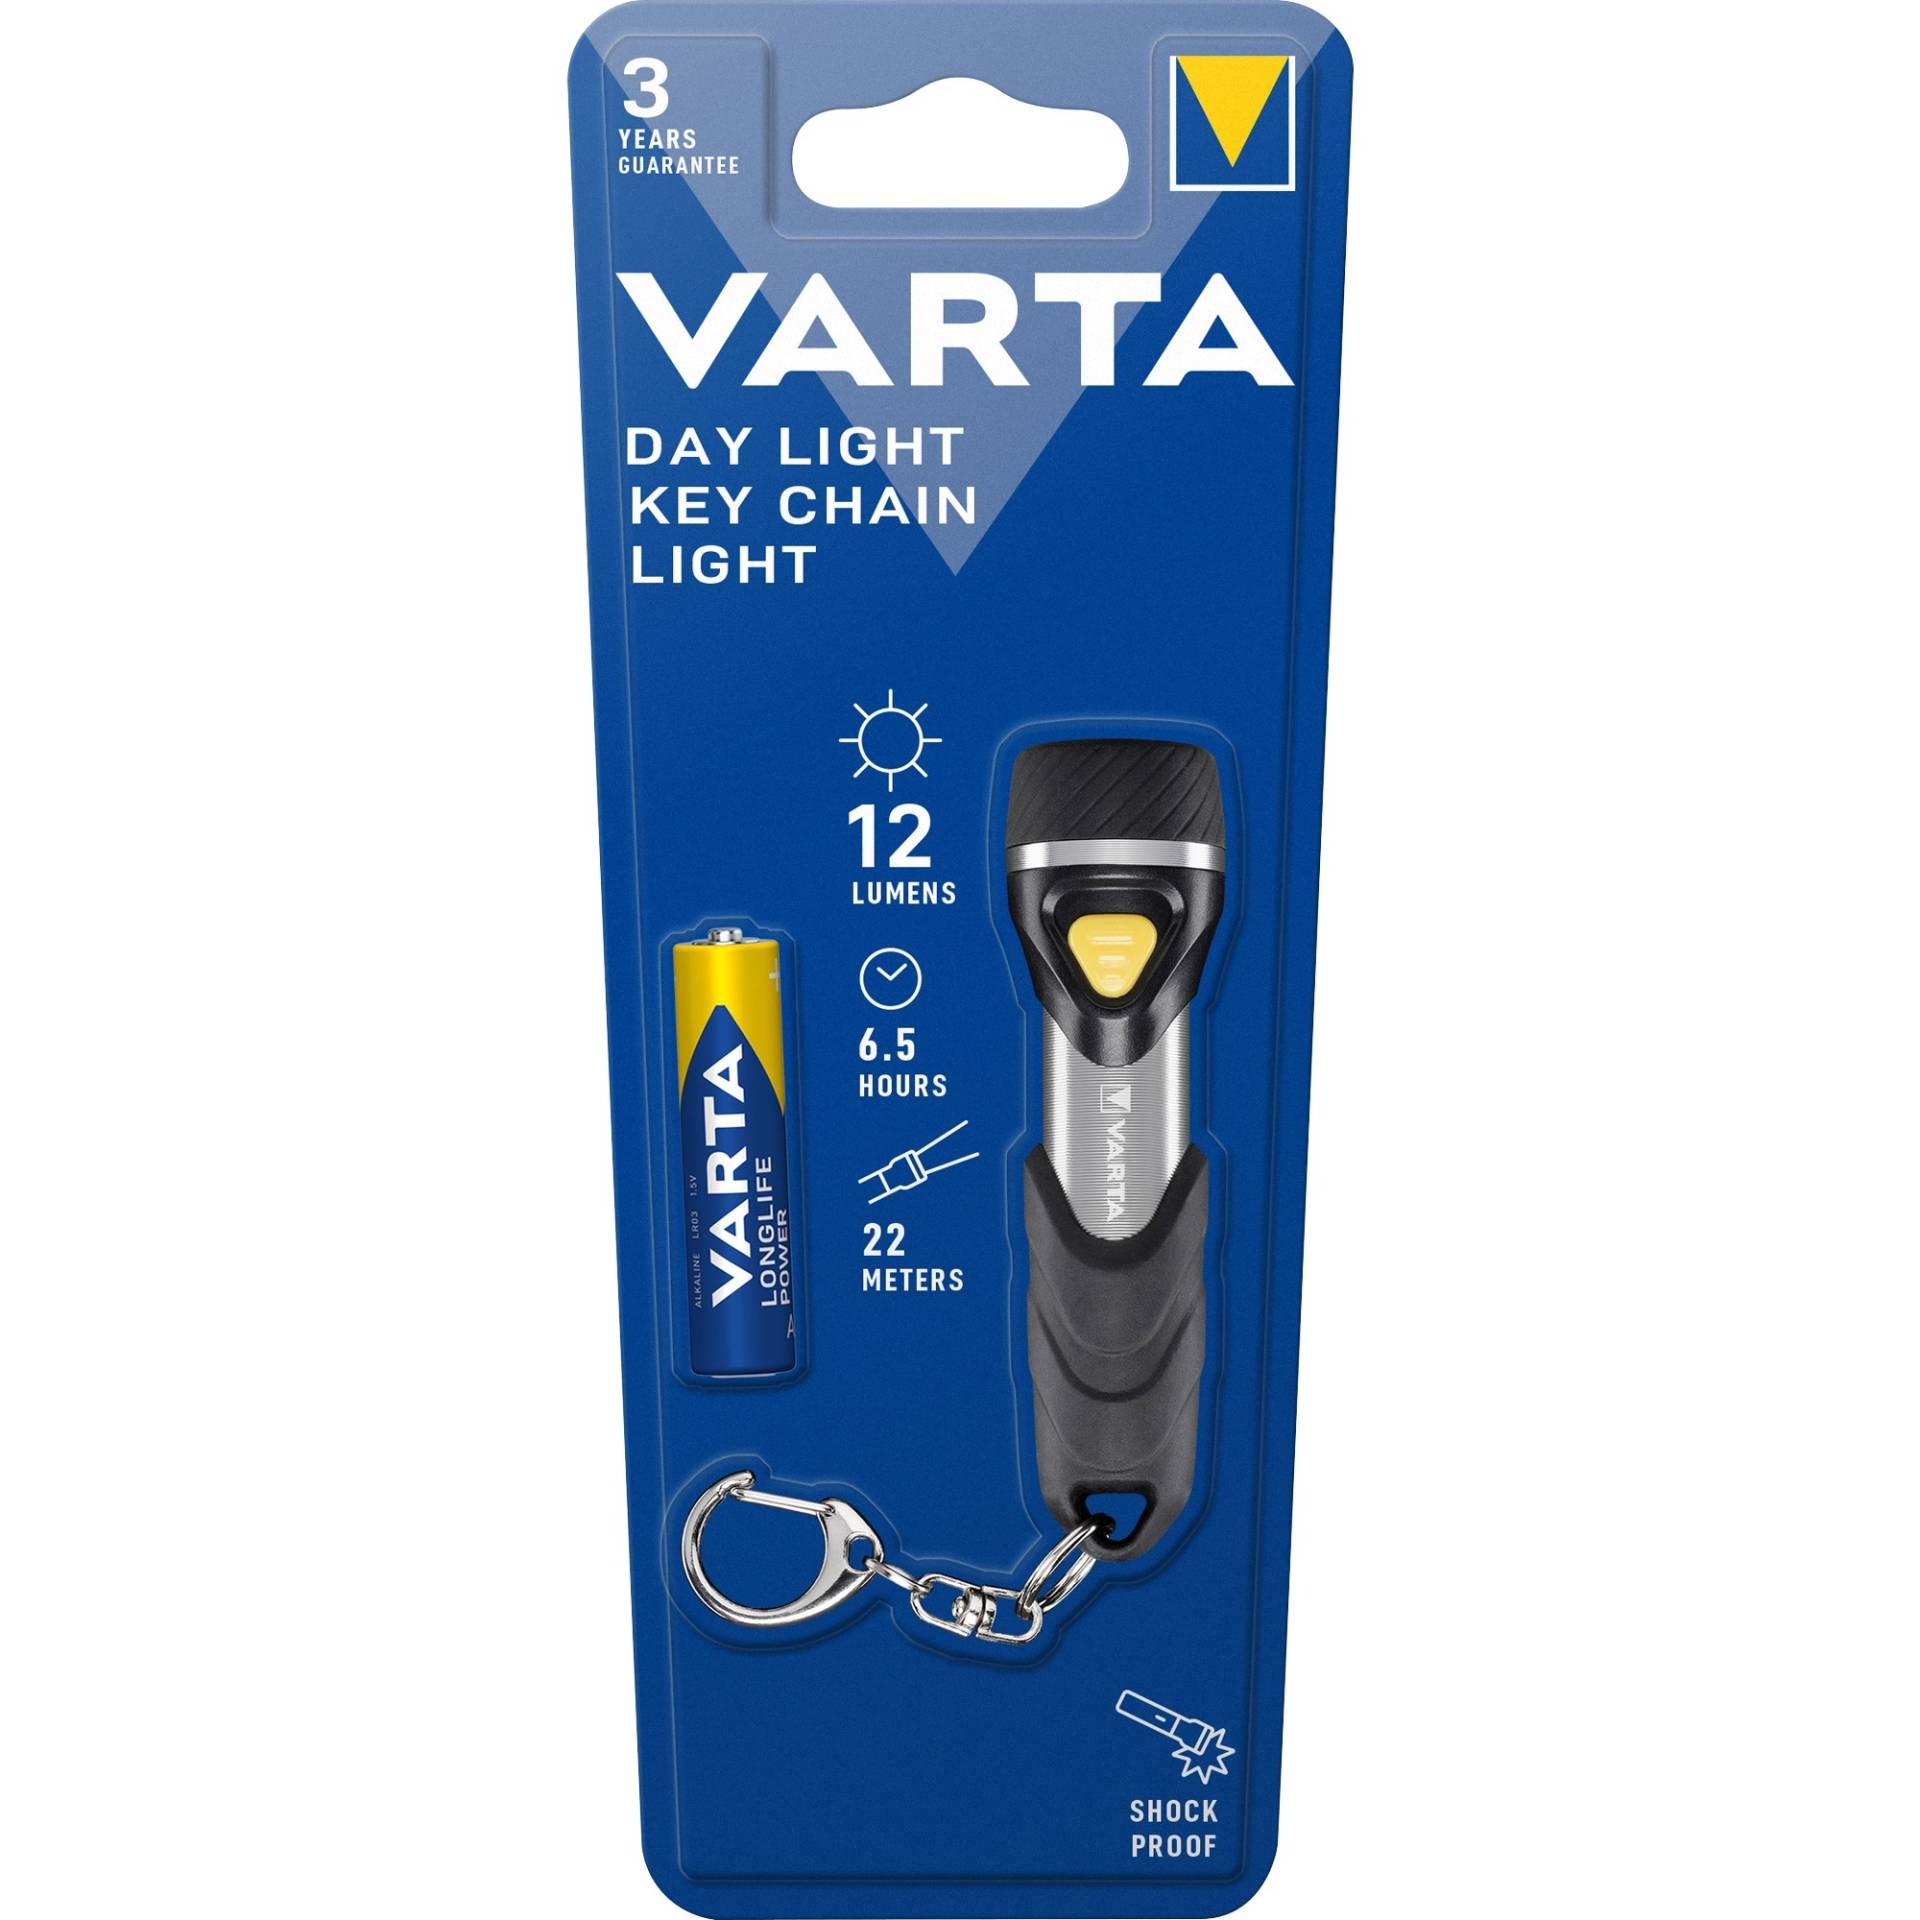 Day Light Key Chain Light, Taschenlampe von Varta